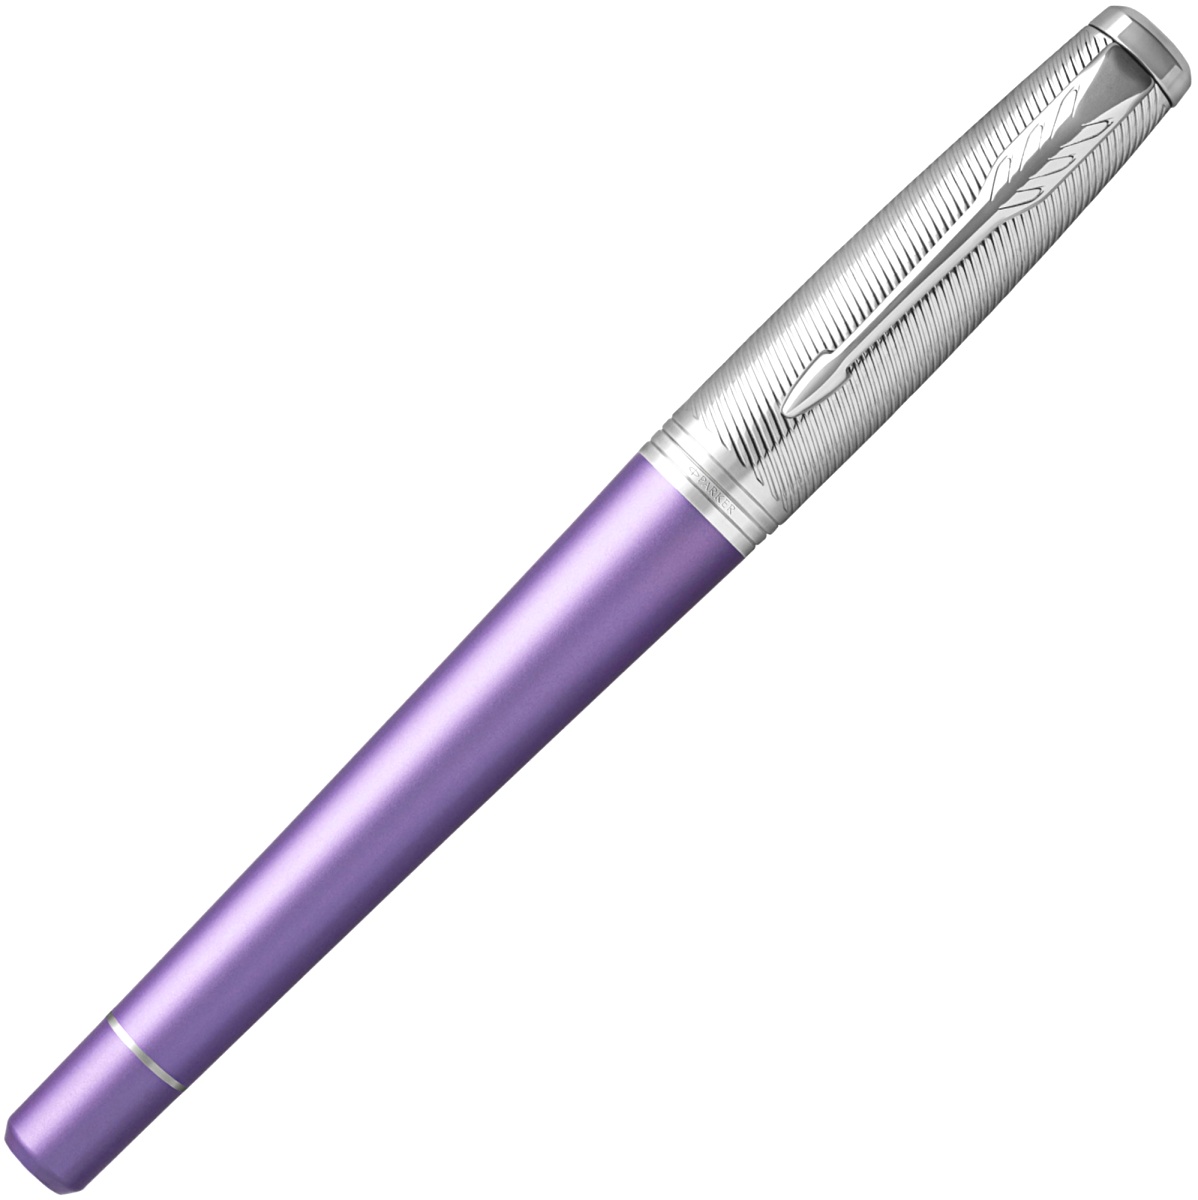  Ручка перьевая Parker Urban Premium F311, Violet CT (Перо F), фото 2